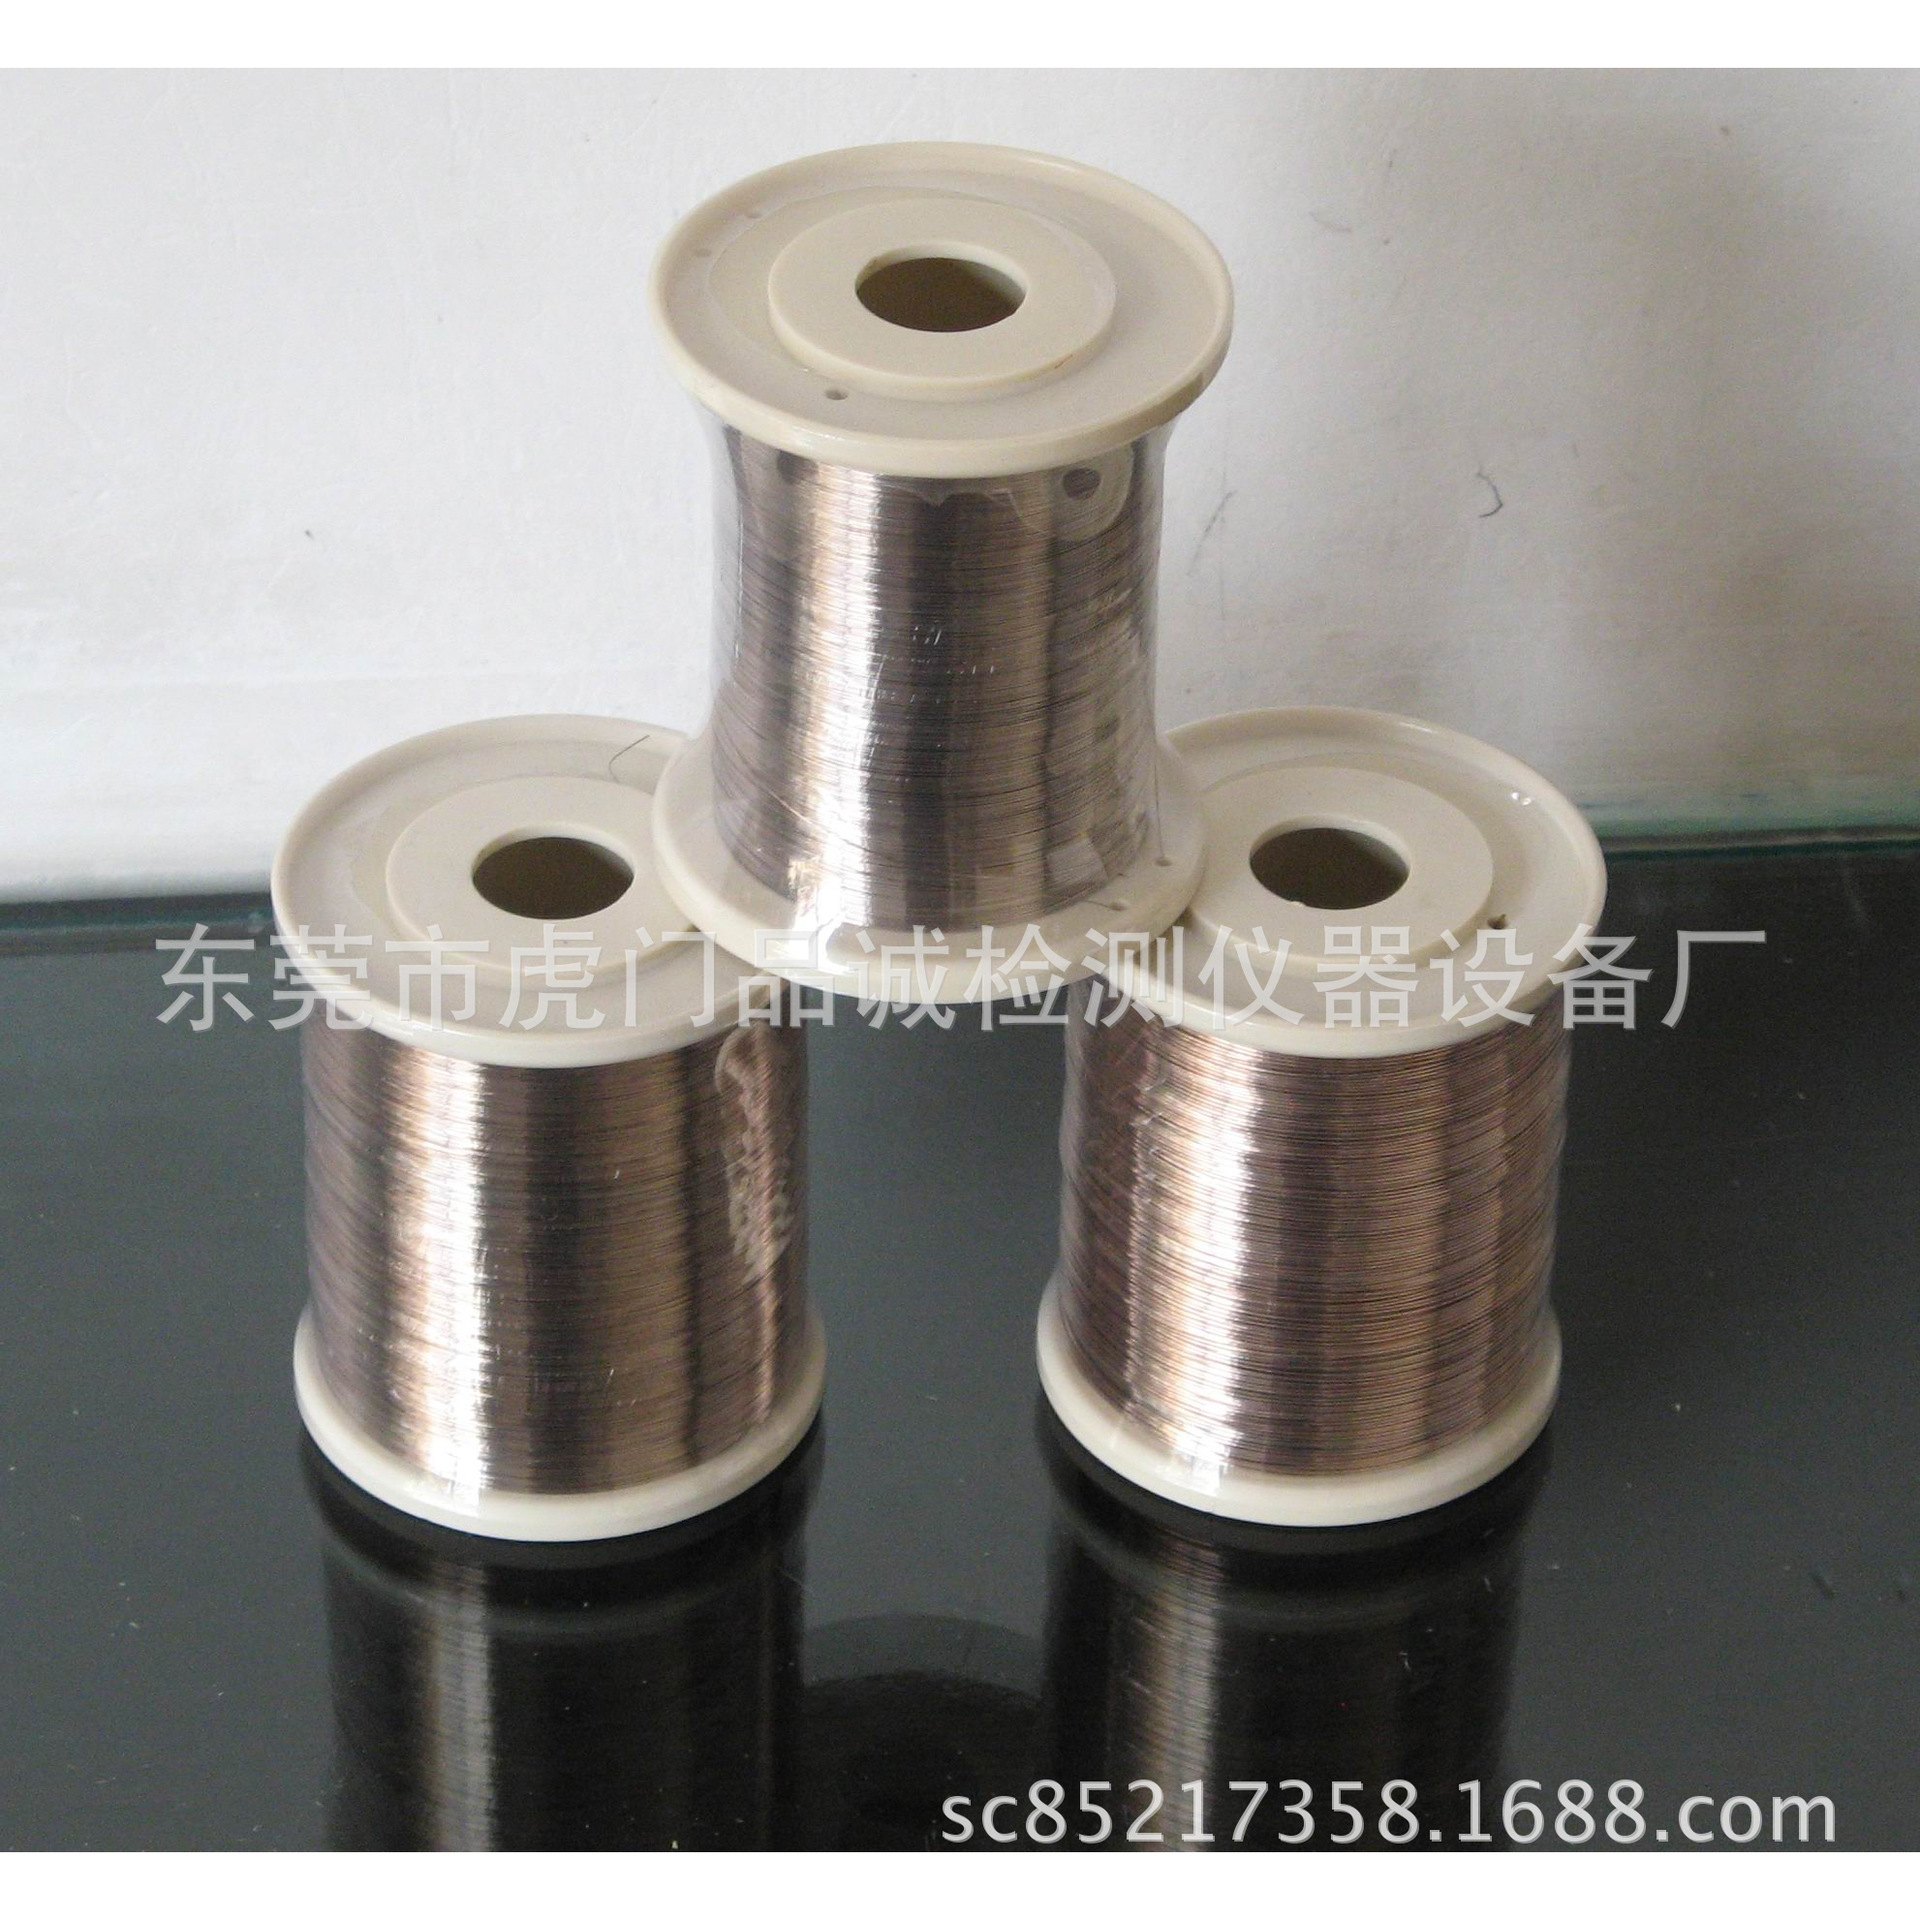 铜线专用银焊丝 特价供银焊丝 银丝 焊丝 银丝 0.2mm银焊丝